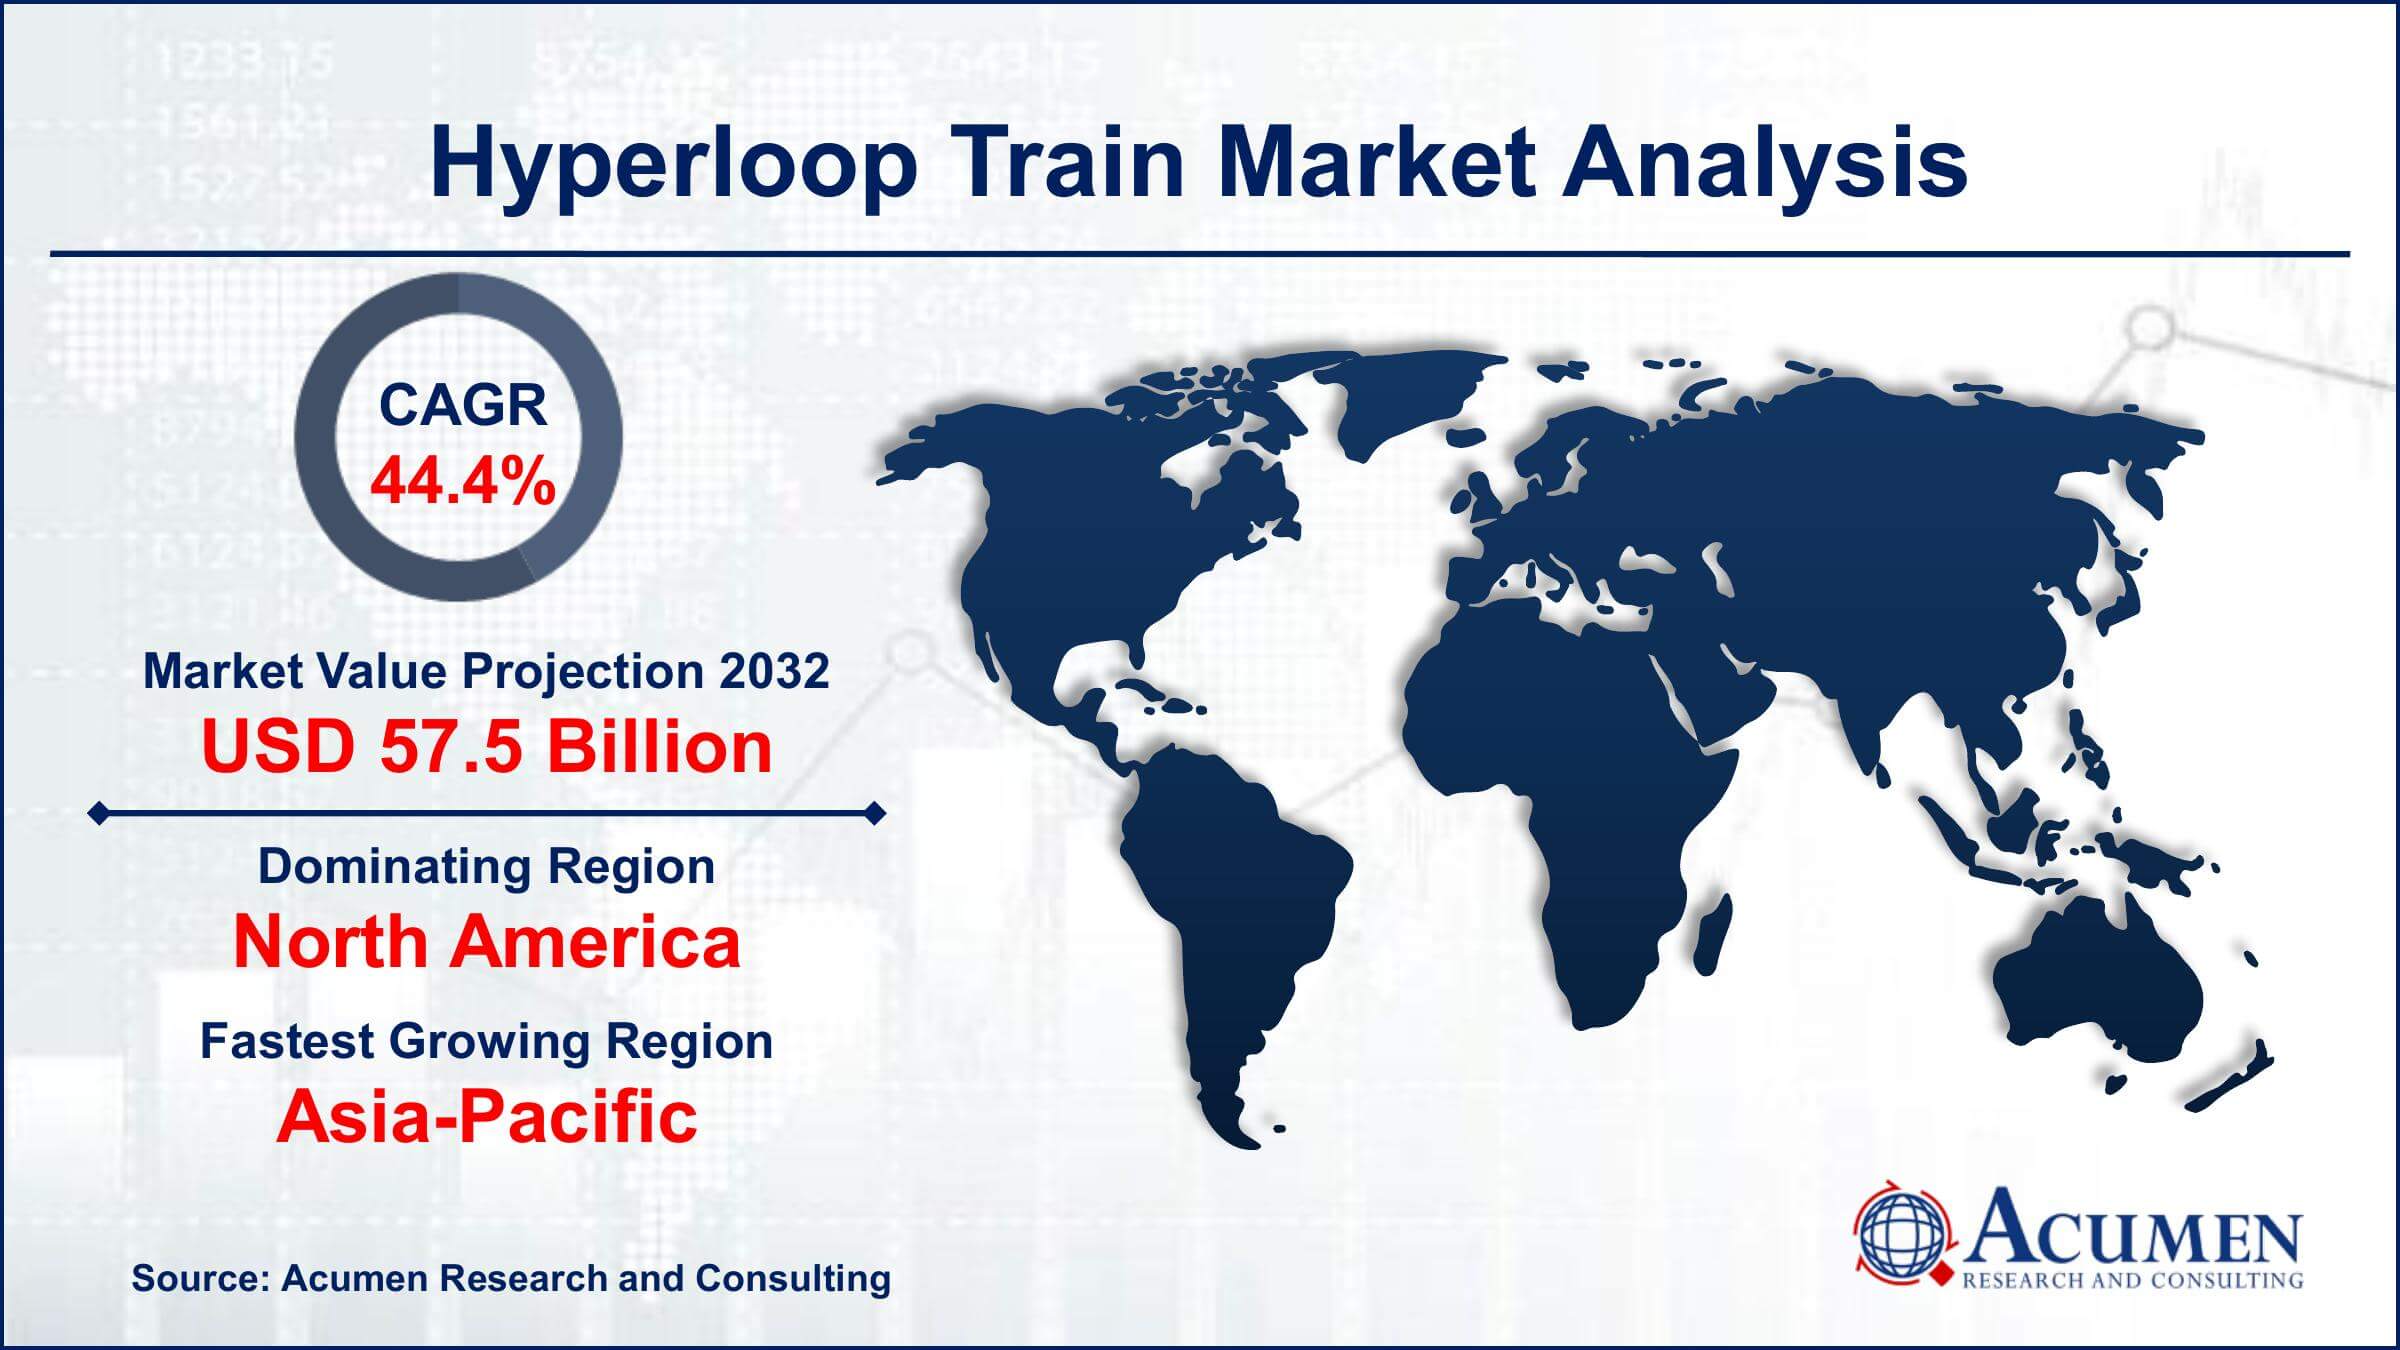 Global Hyperloop Train Market Trends